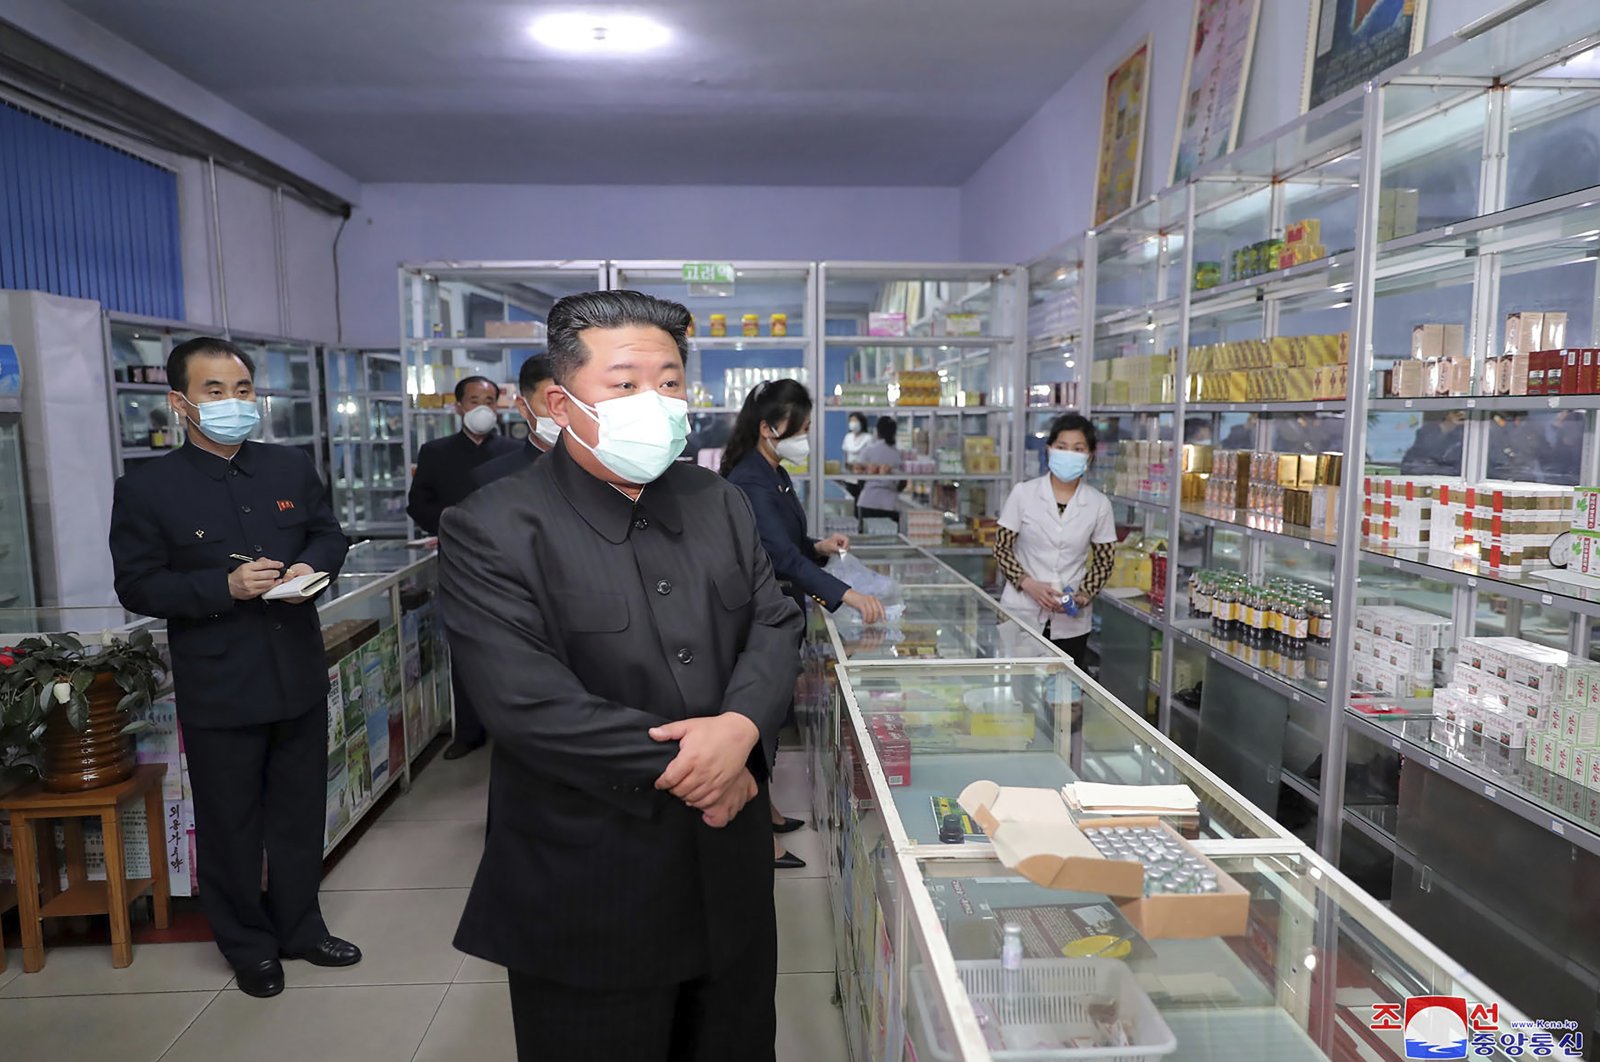 North Korean leader Kim Jong Un (C) visits a pharmacy in Pyongyang, North Korea, Sunday, May 15, 2022. (AP Photo)